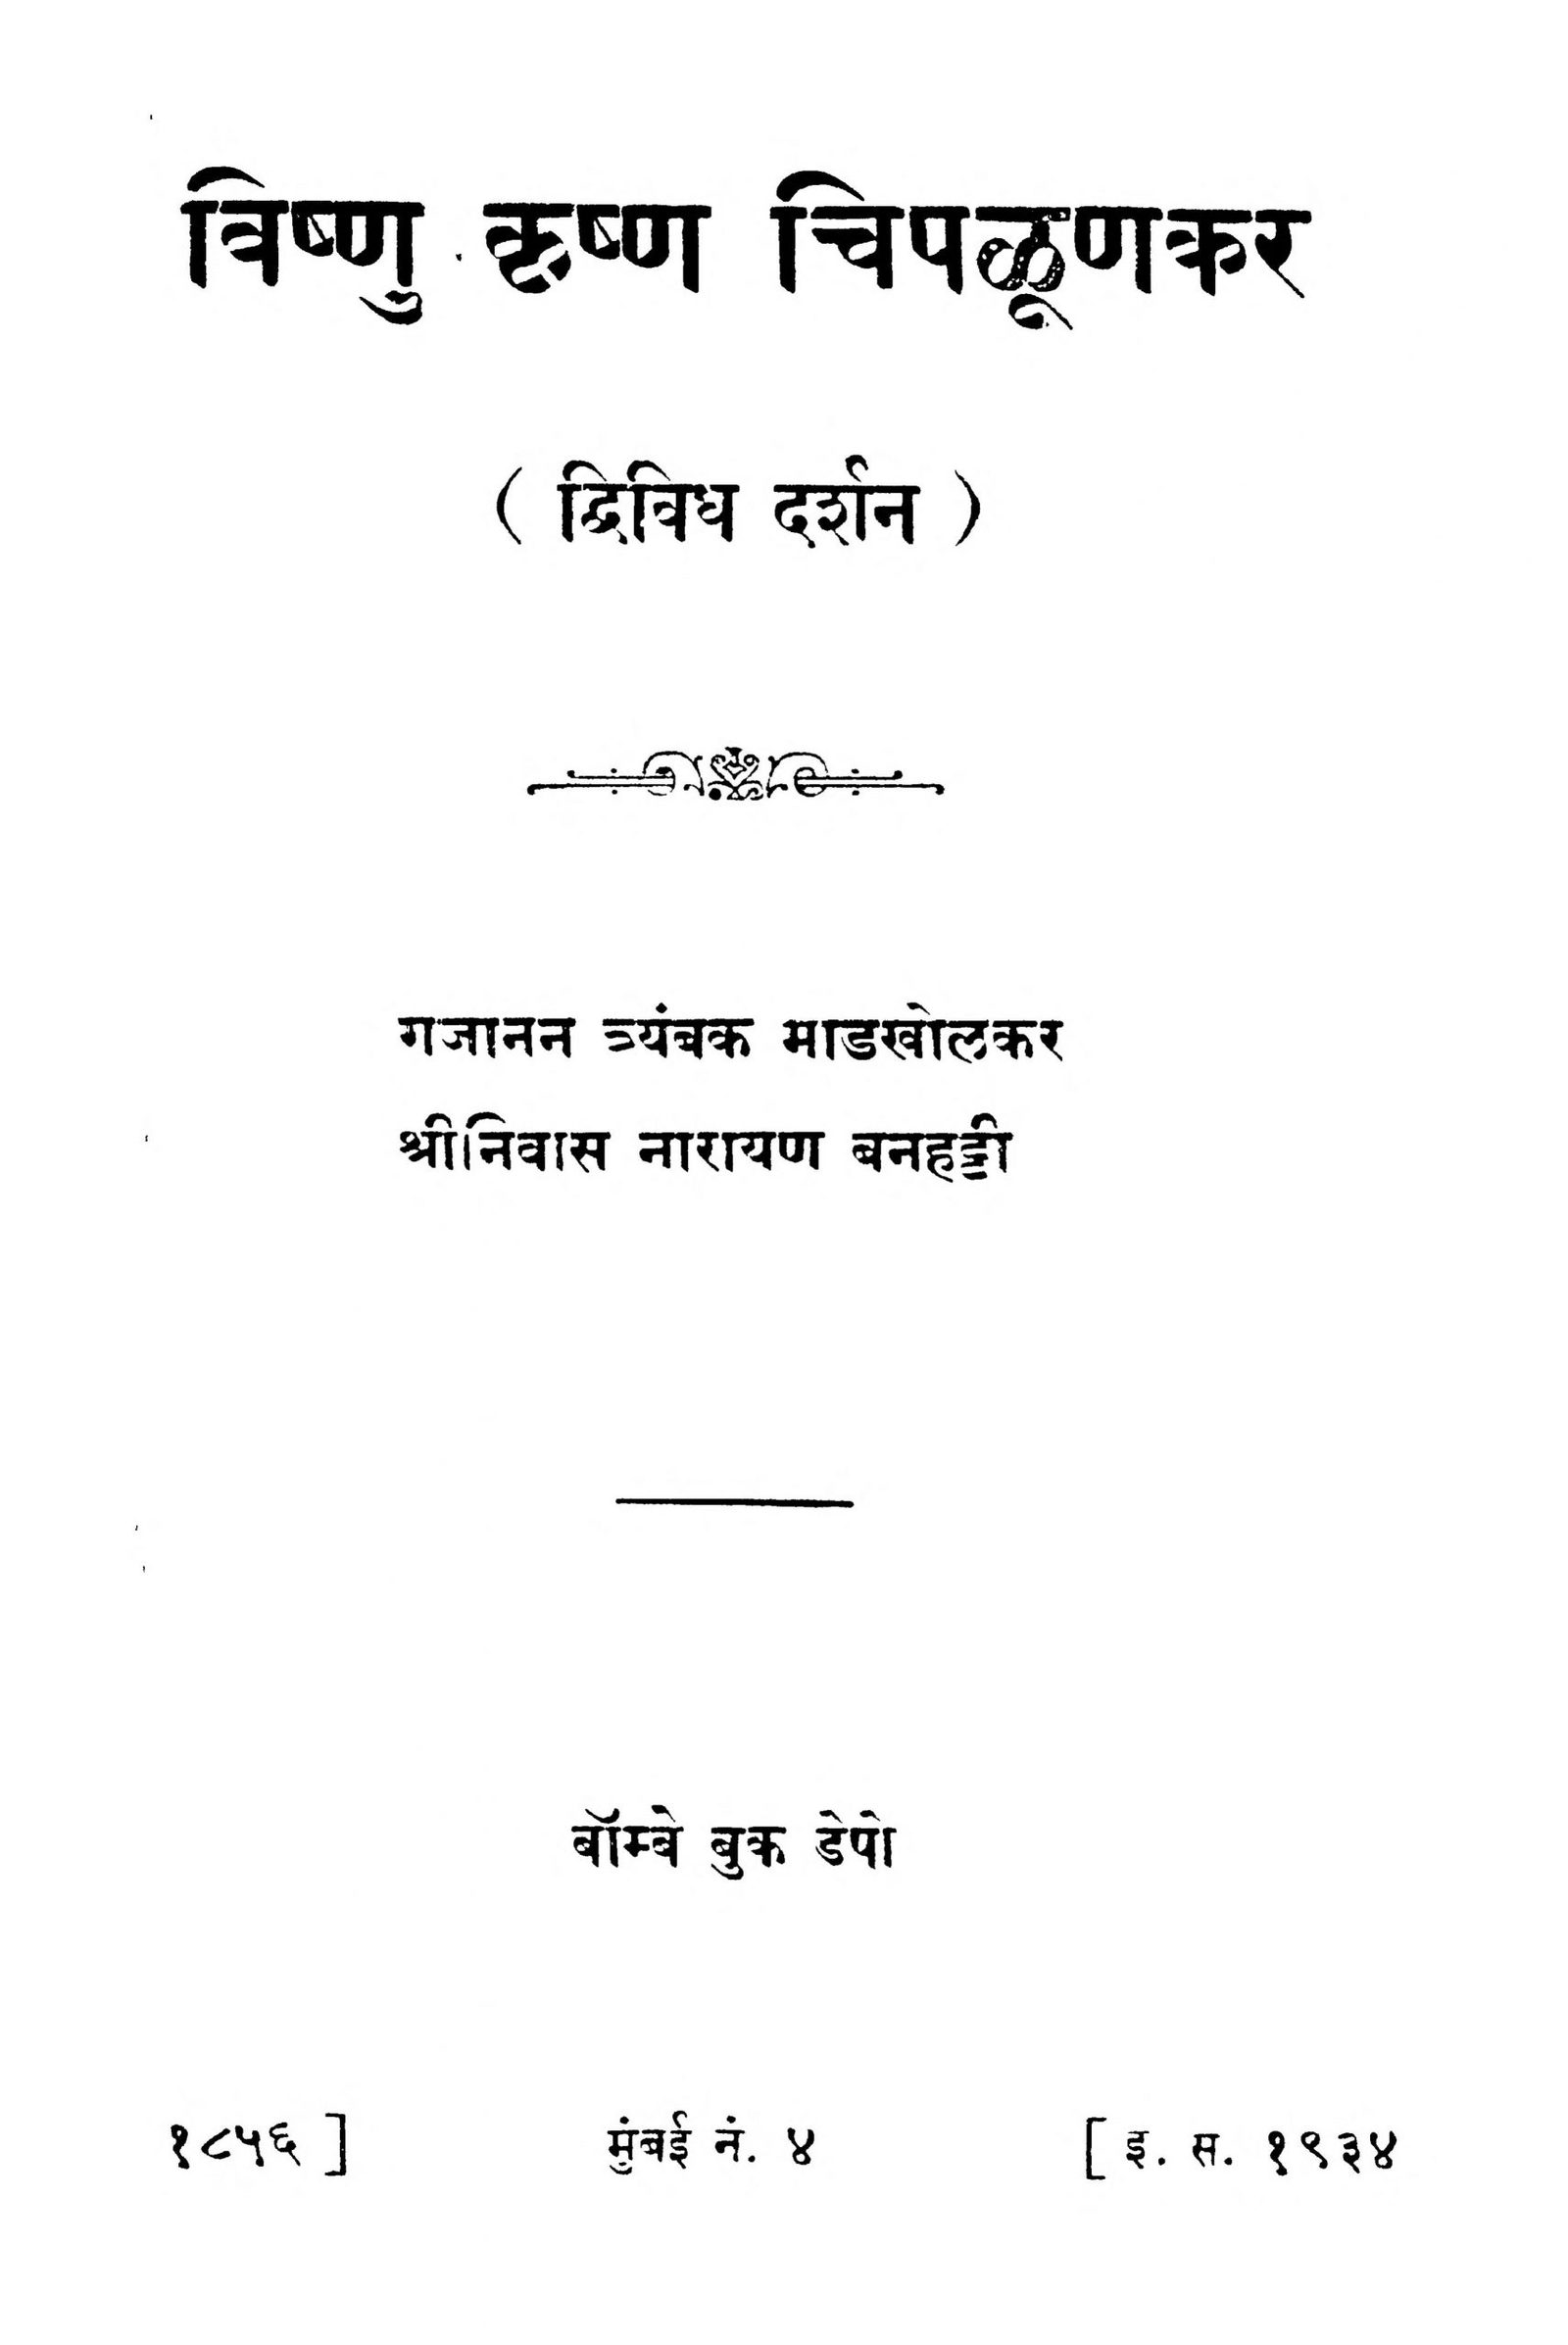 vishnu-krishn-chipaluunakar-by-gajanan-truanbak-madakholakar-srinivas-narayan-scaled-2